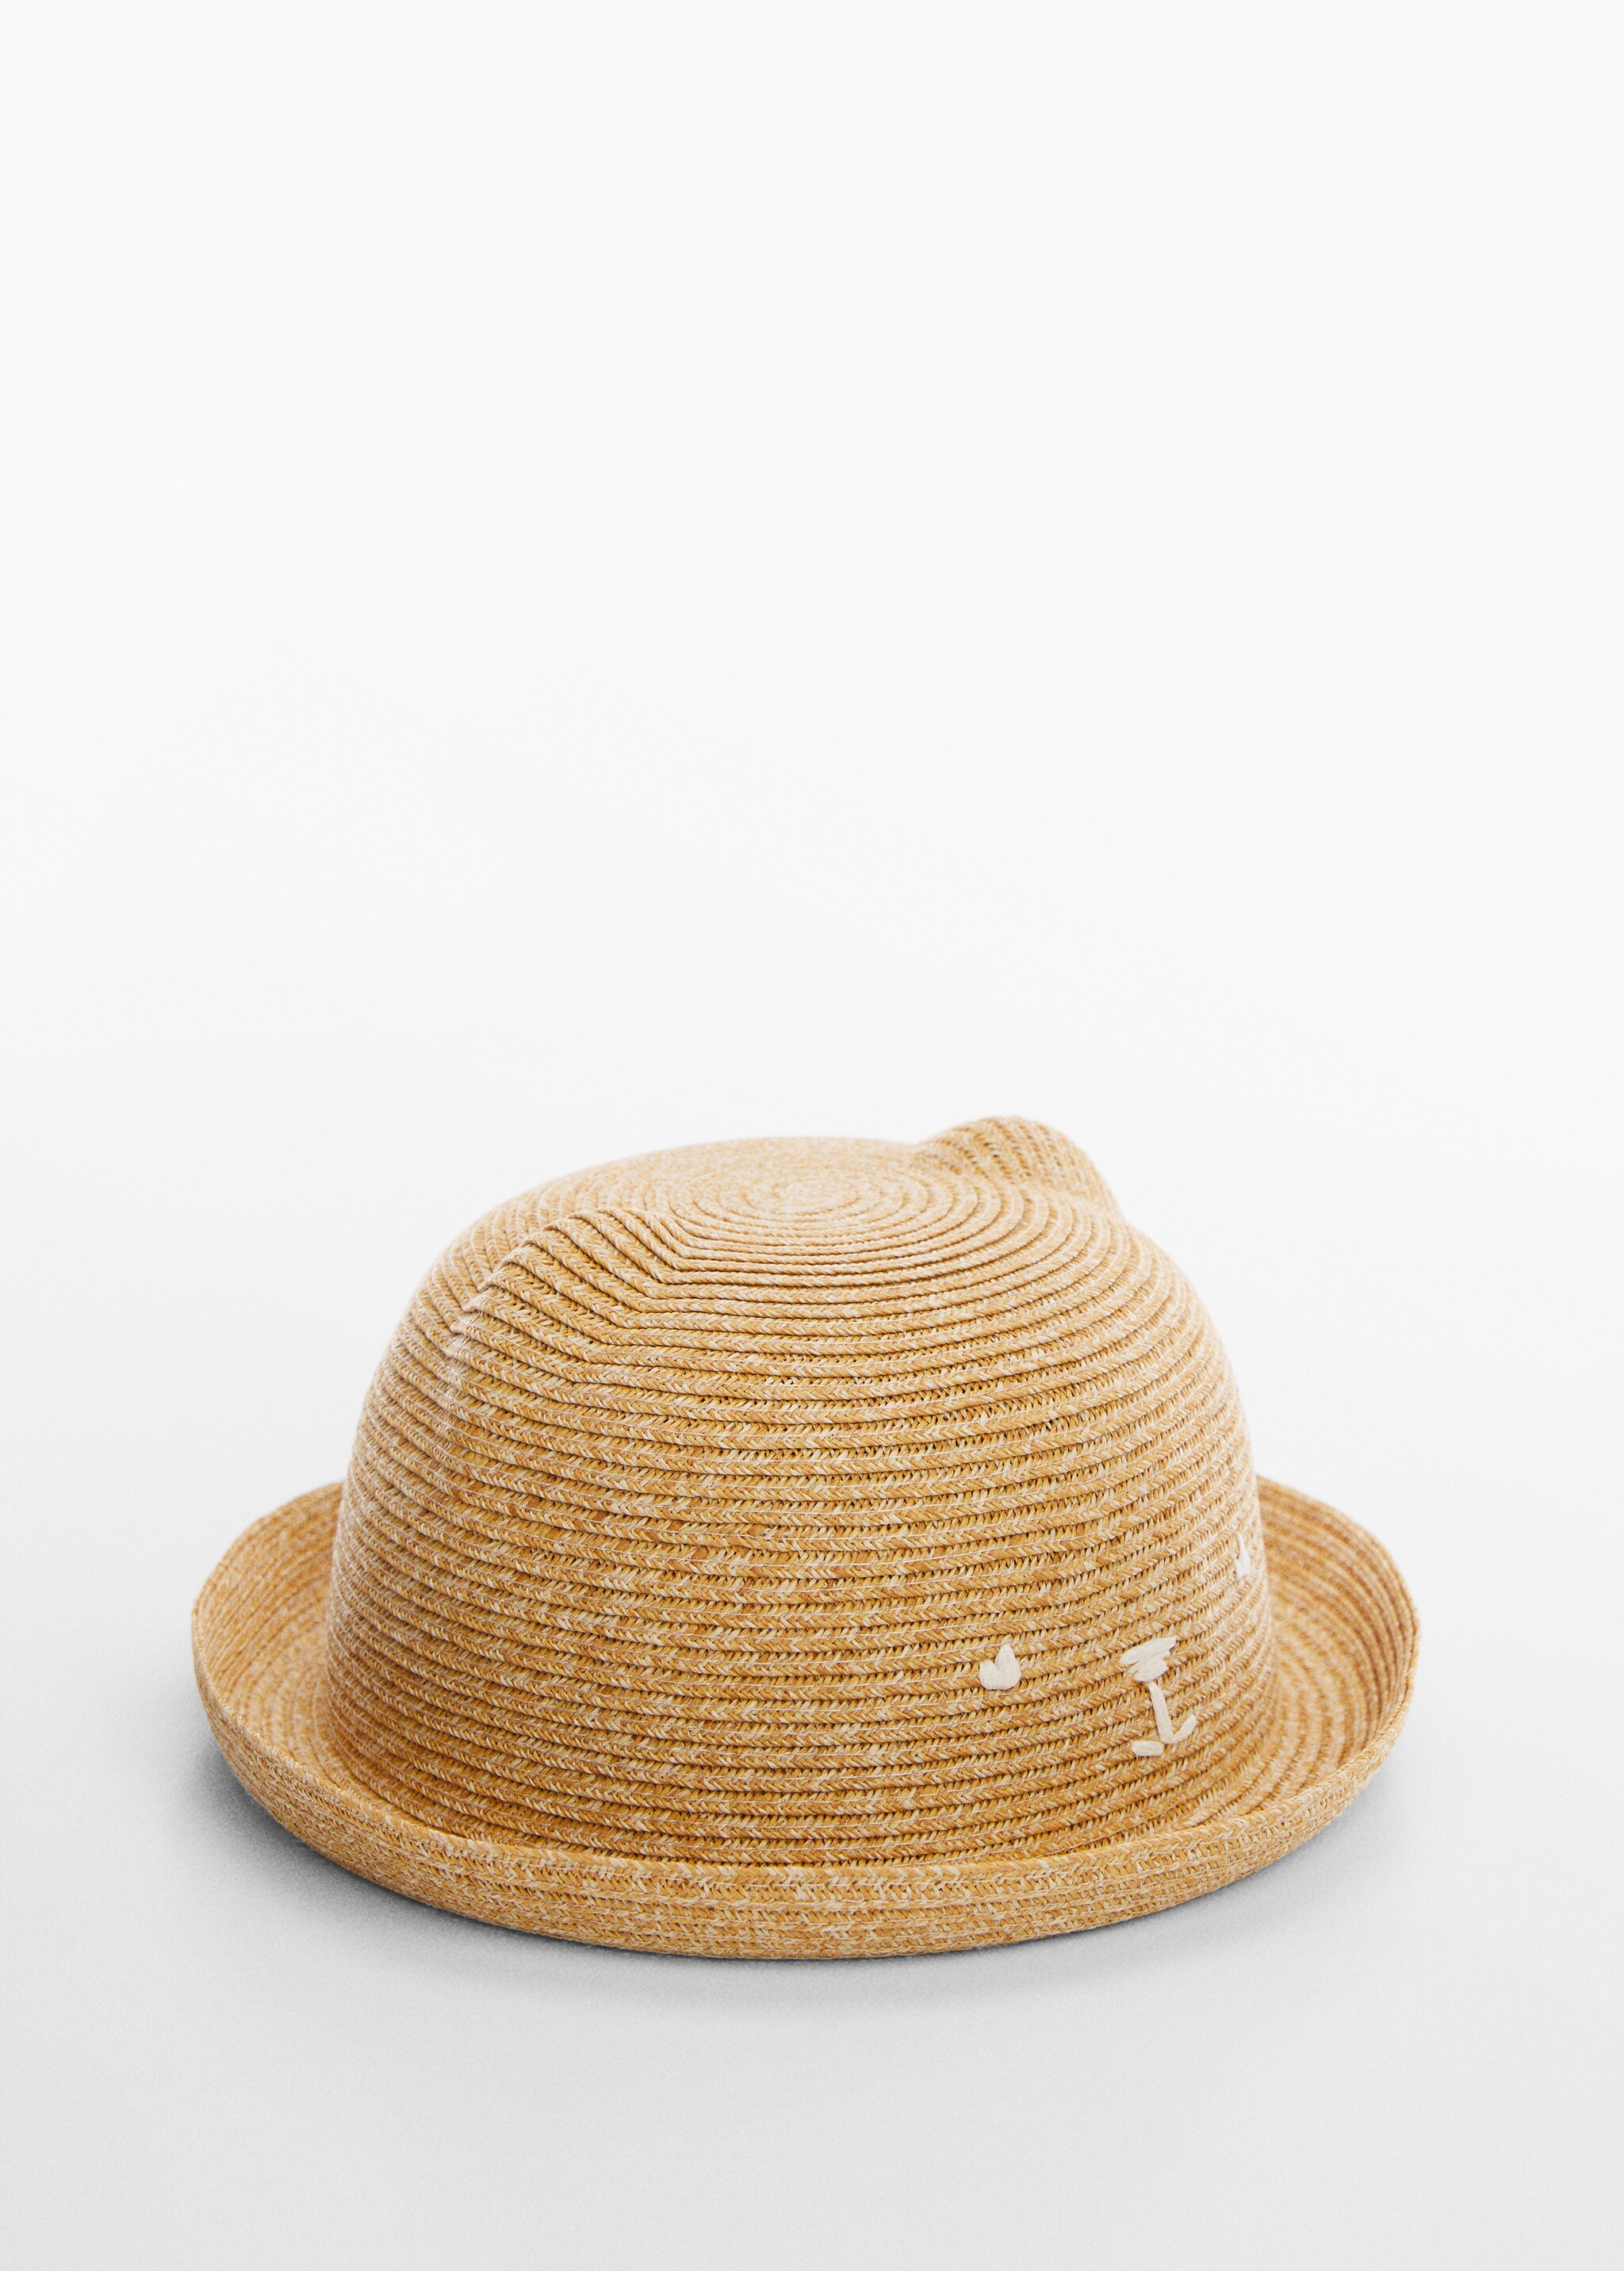 Соломенная шляпа с ушками - Средний план